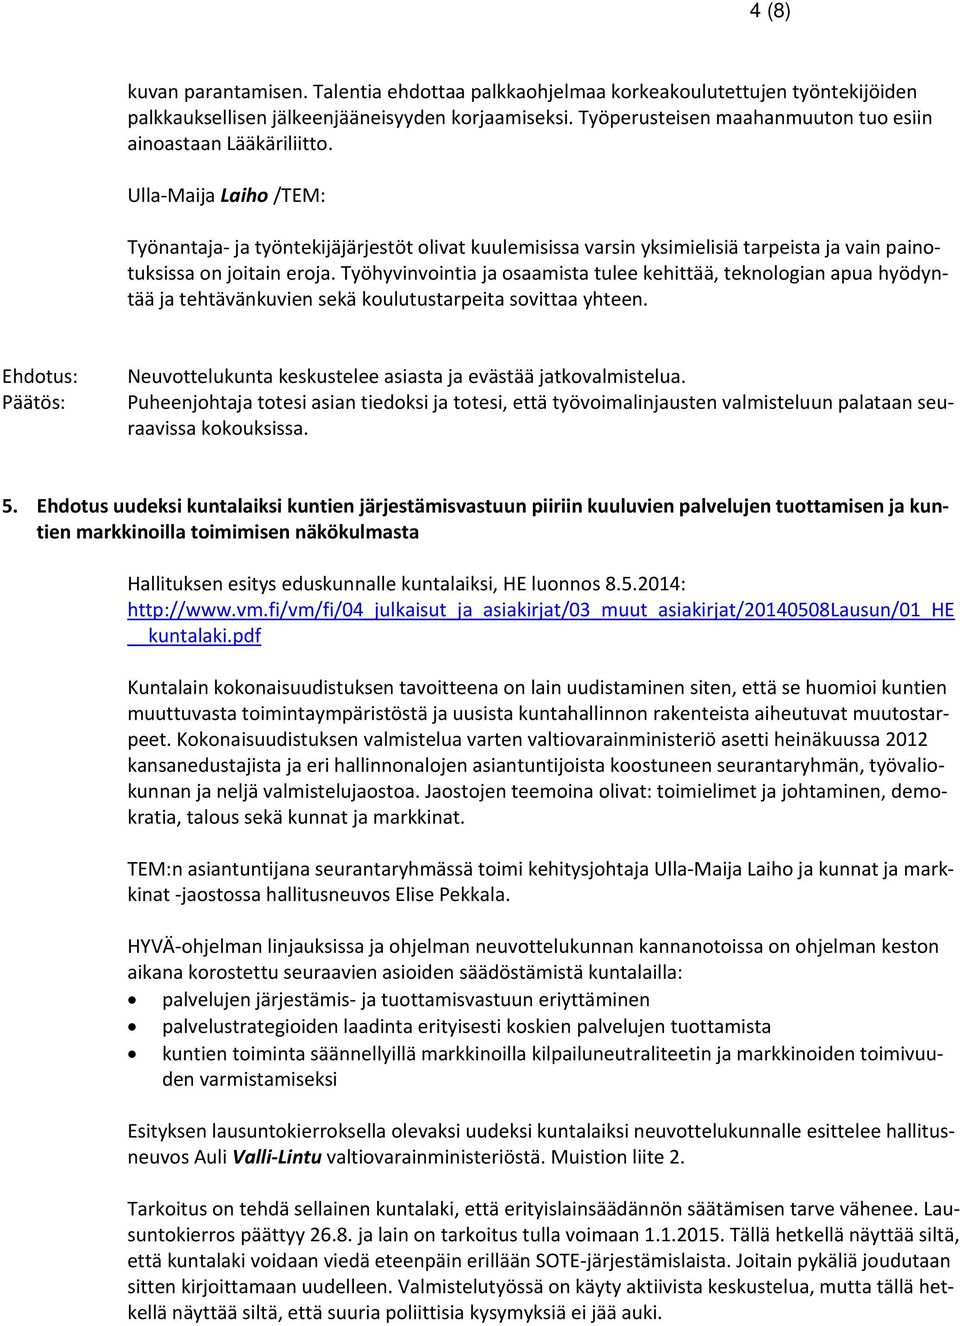 Ulla Maija Laiho /TEM: Työnantaja ja työntekijäjärjestöt olivat kuulemisissa varsin yksimielisiä tarpeista ja vain painotuksissa on joitain eroja.